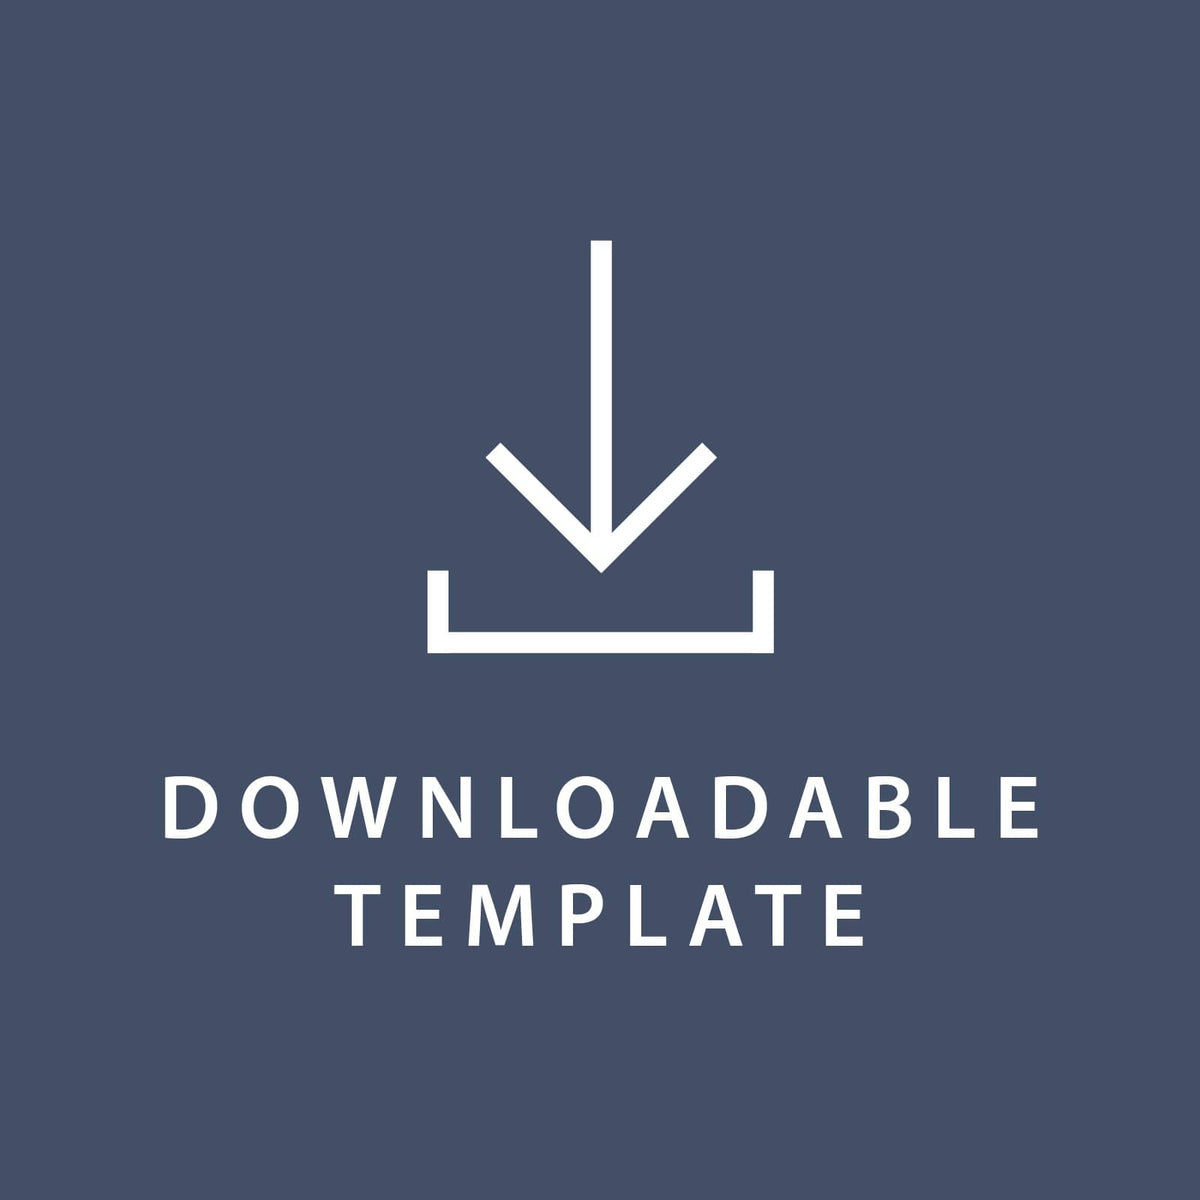 Template for 11 x 8.5 Program Inserts Gartner Studios Template tmplt0738